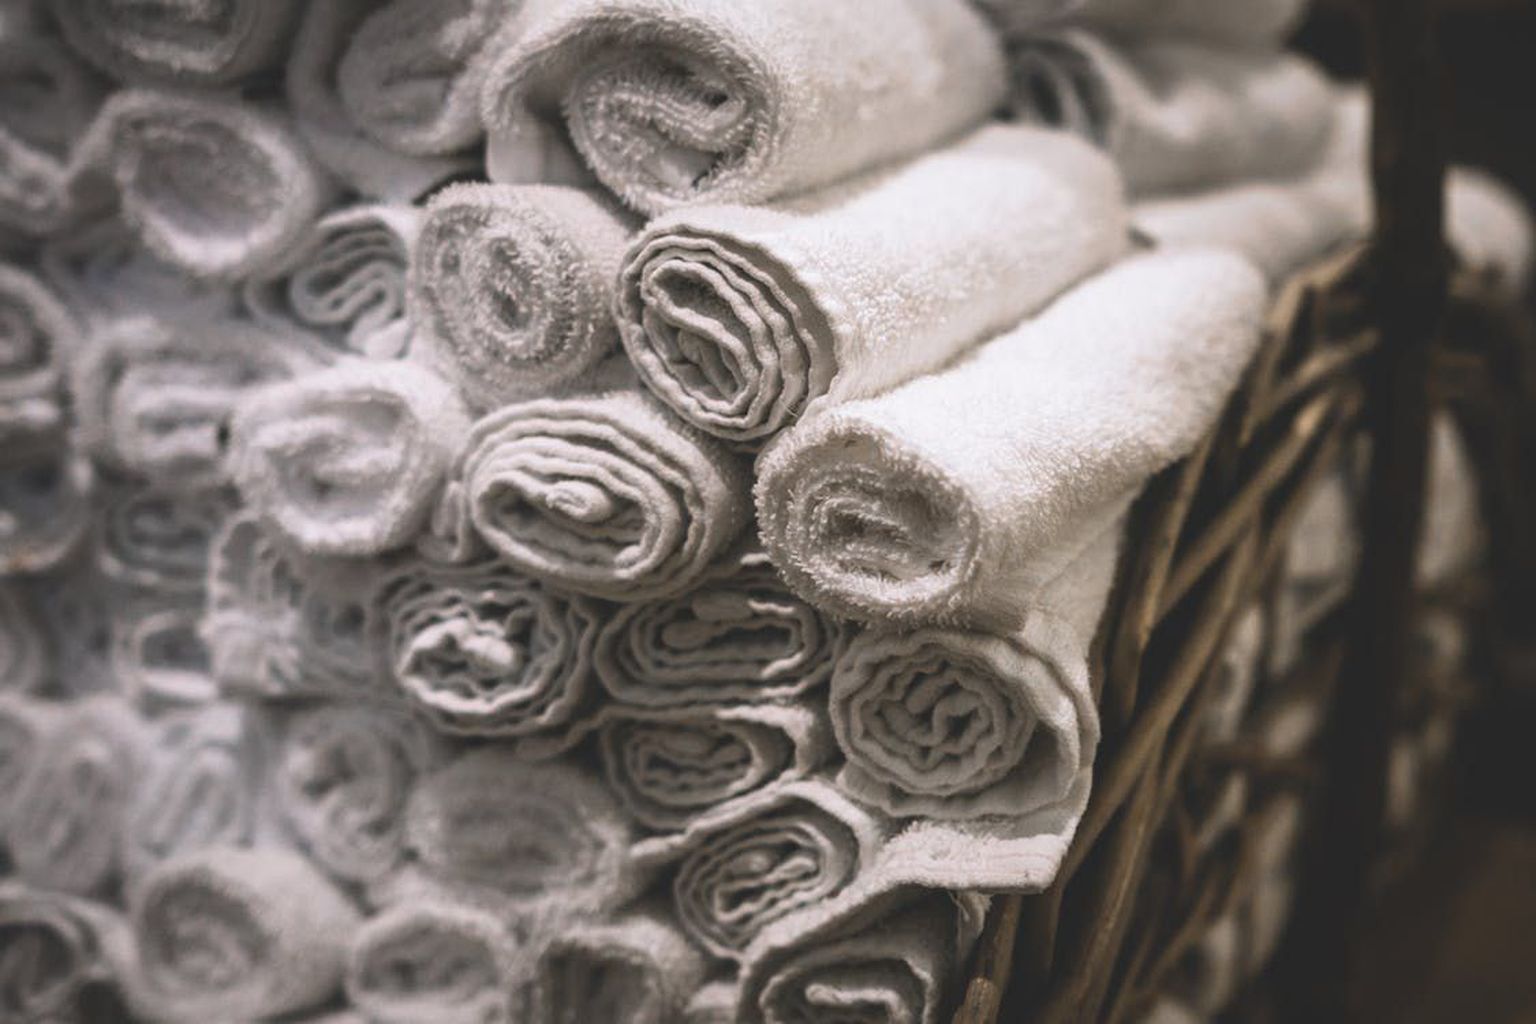 Tugevalt määrdunud lapid ja rätikud pese ülejäänud pesust eraldi.